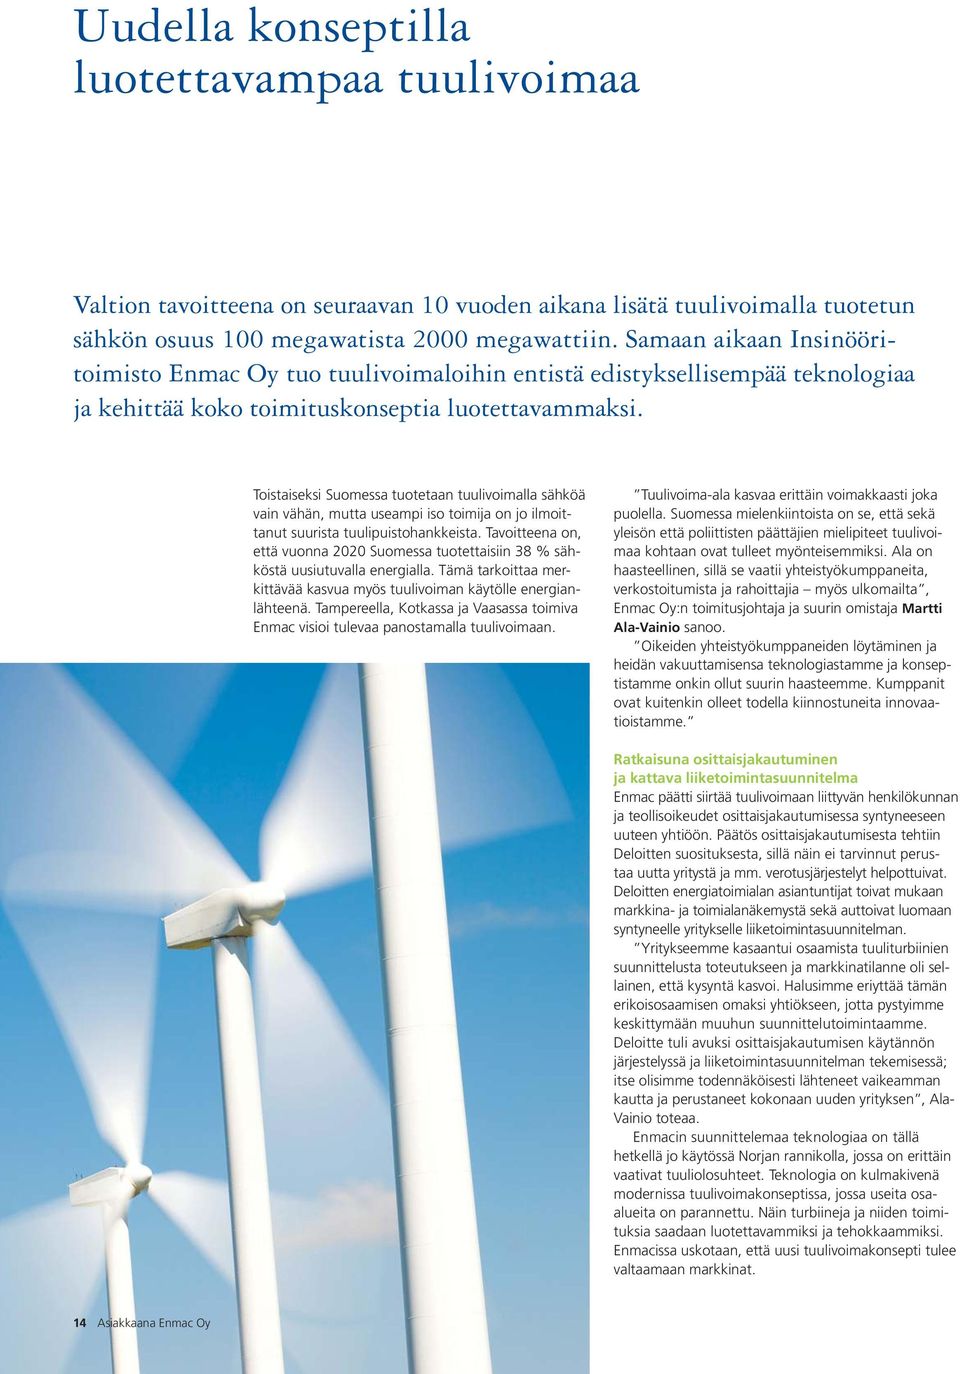 Toistaiseksi Suomessa tuotetaan tuulivoimalla sähköä vain vähän, mutta useampi iso toimija on jo ilmoittanut suurista tuulipuistohankkeista.